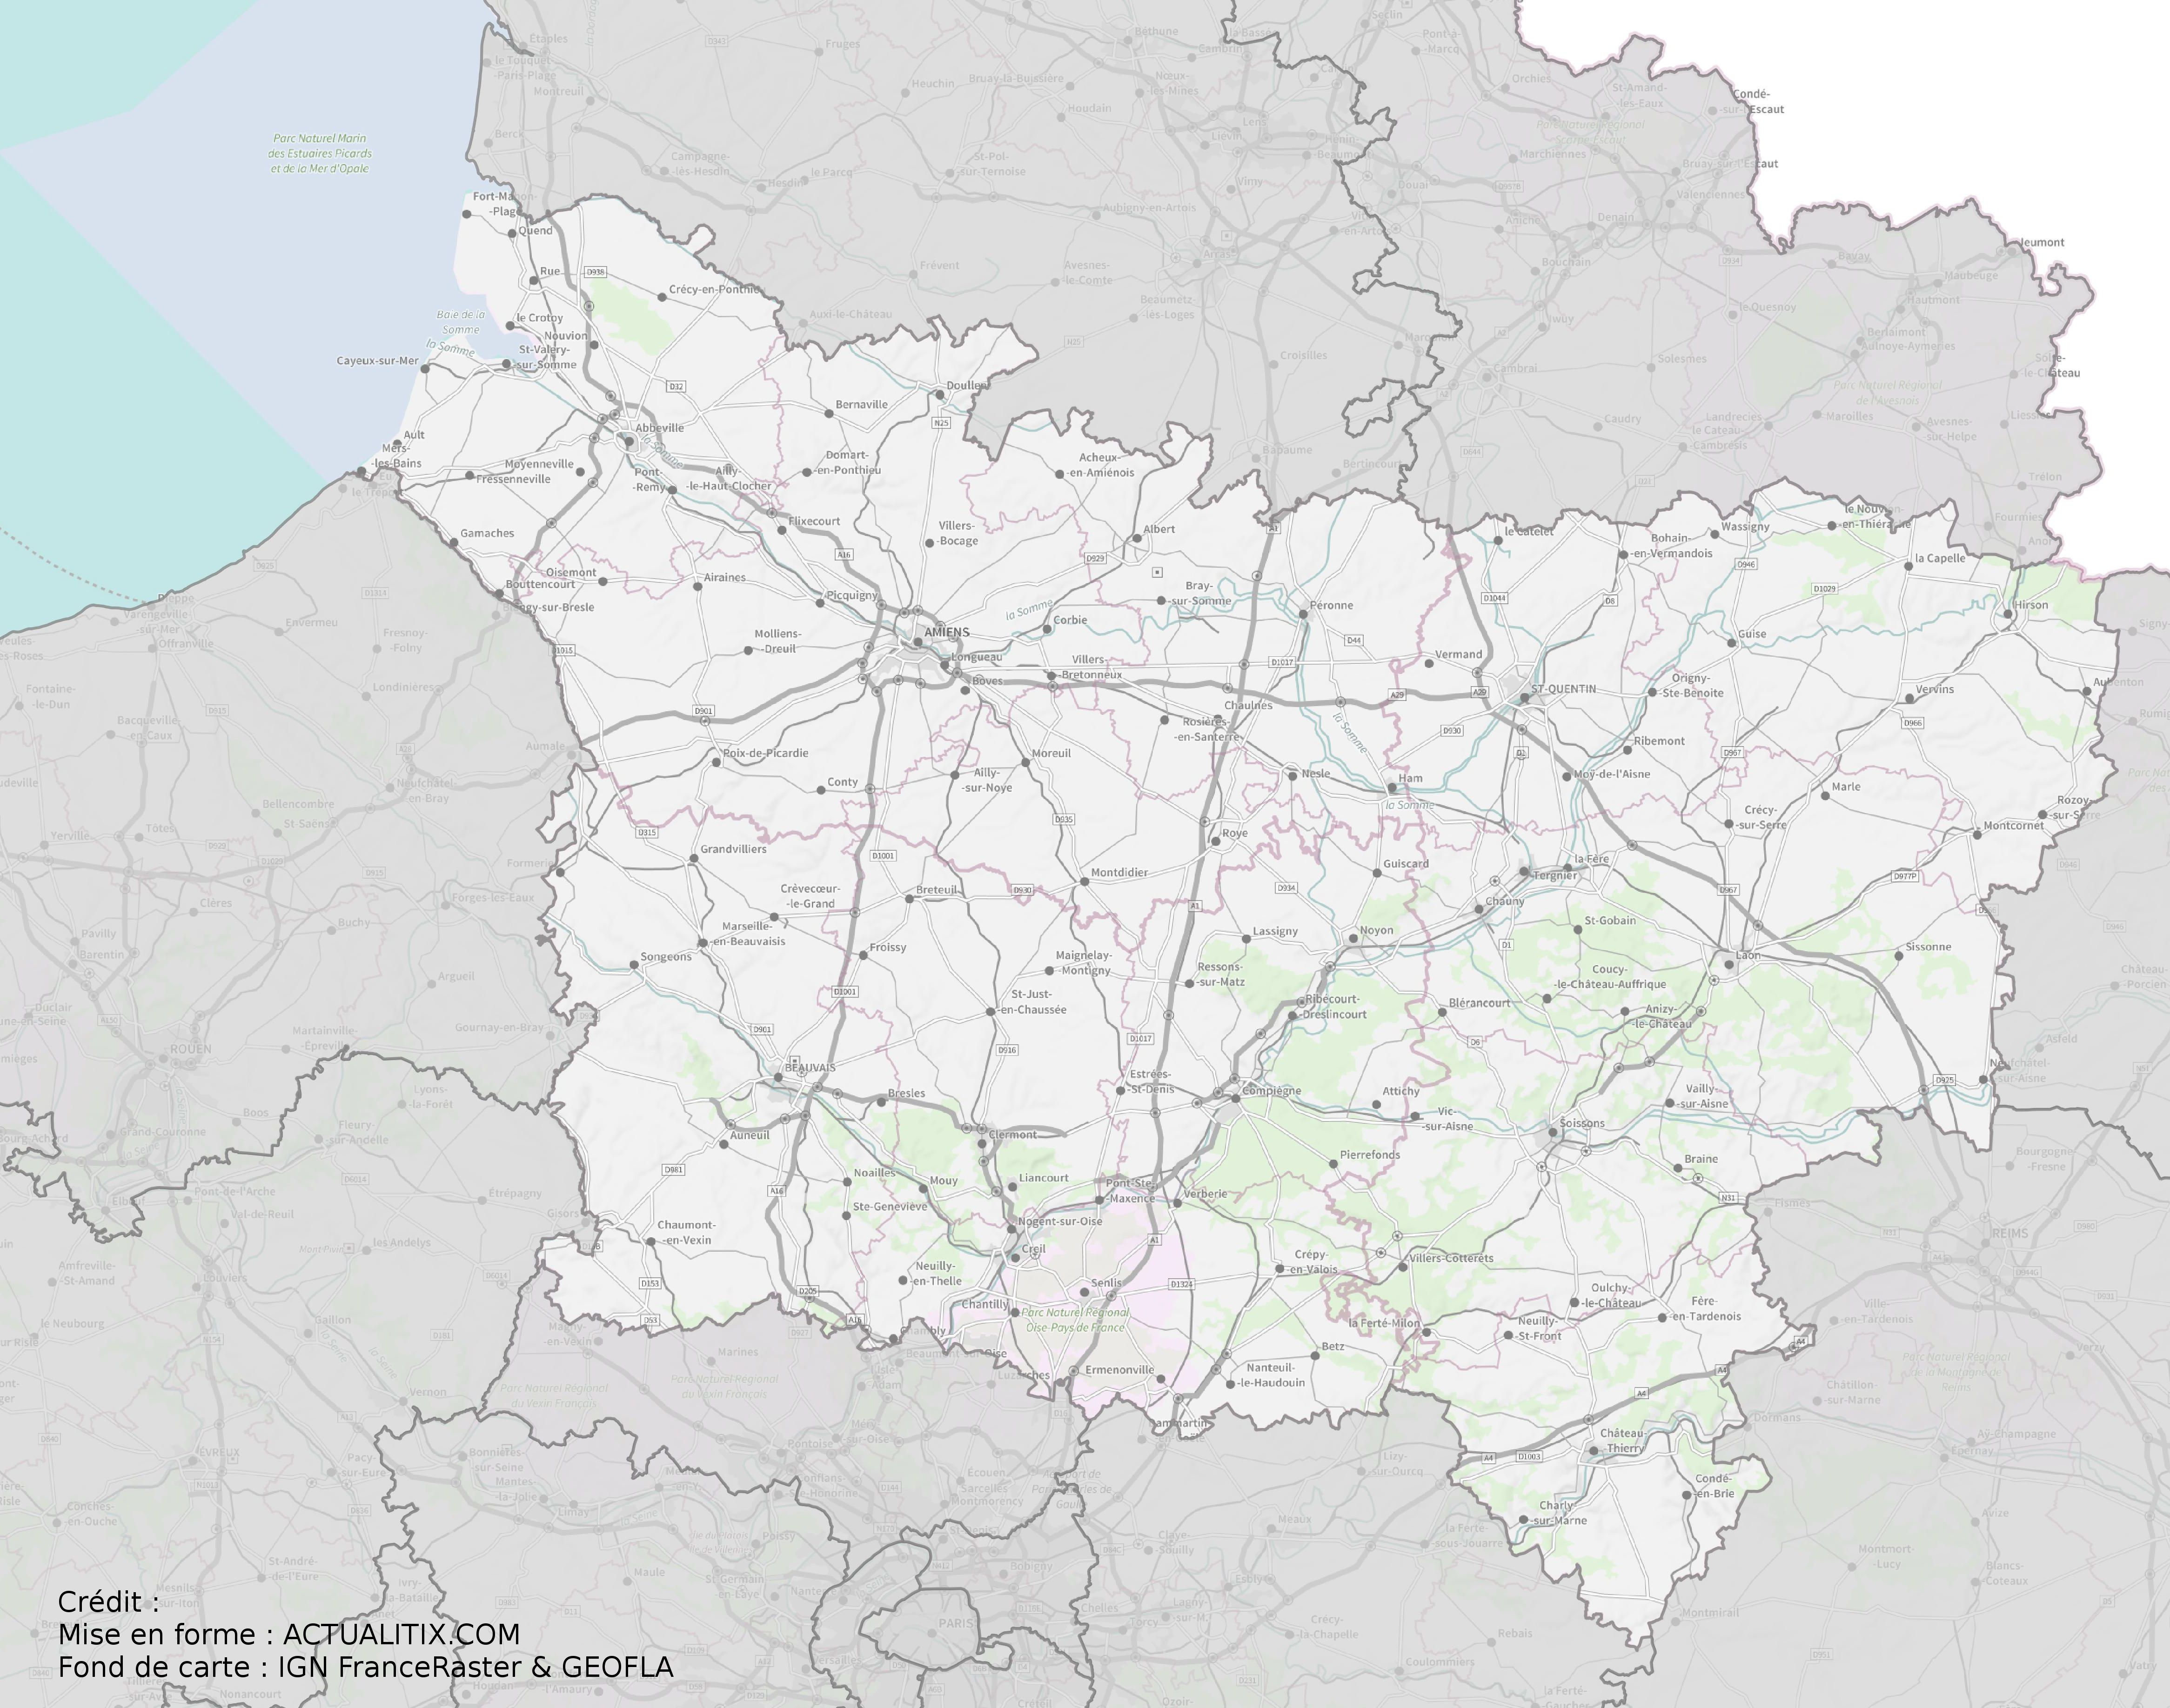 Kaart Picardie Frankrijk - Vogels